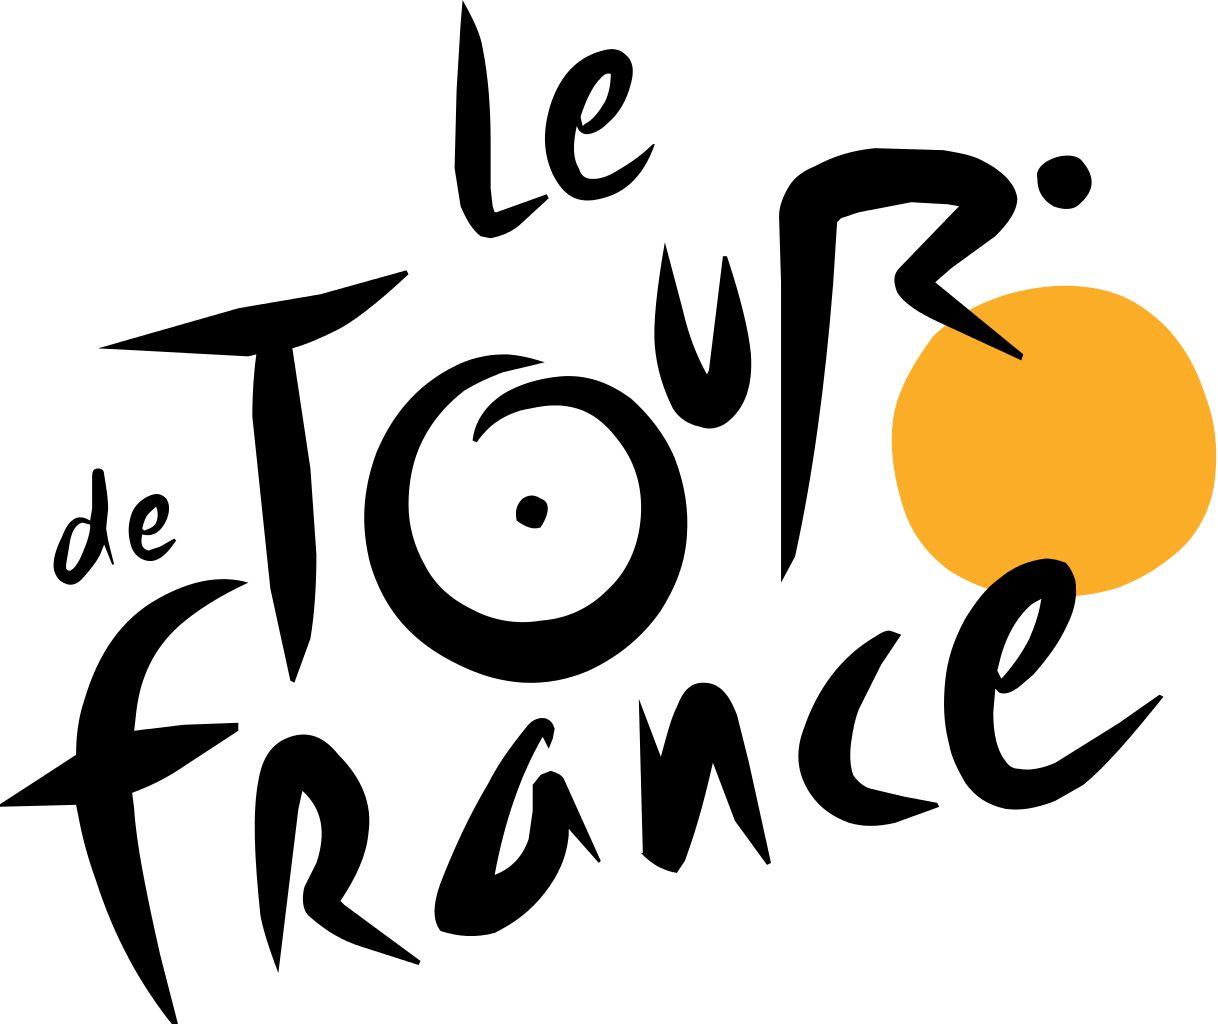 Le Tour De France Logo - The story of the Tour de France logo | Creative Bloq